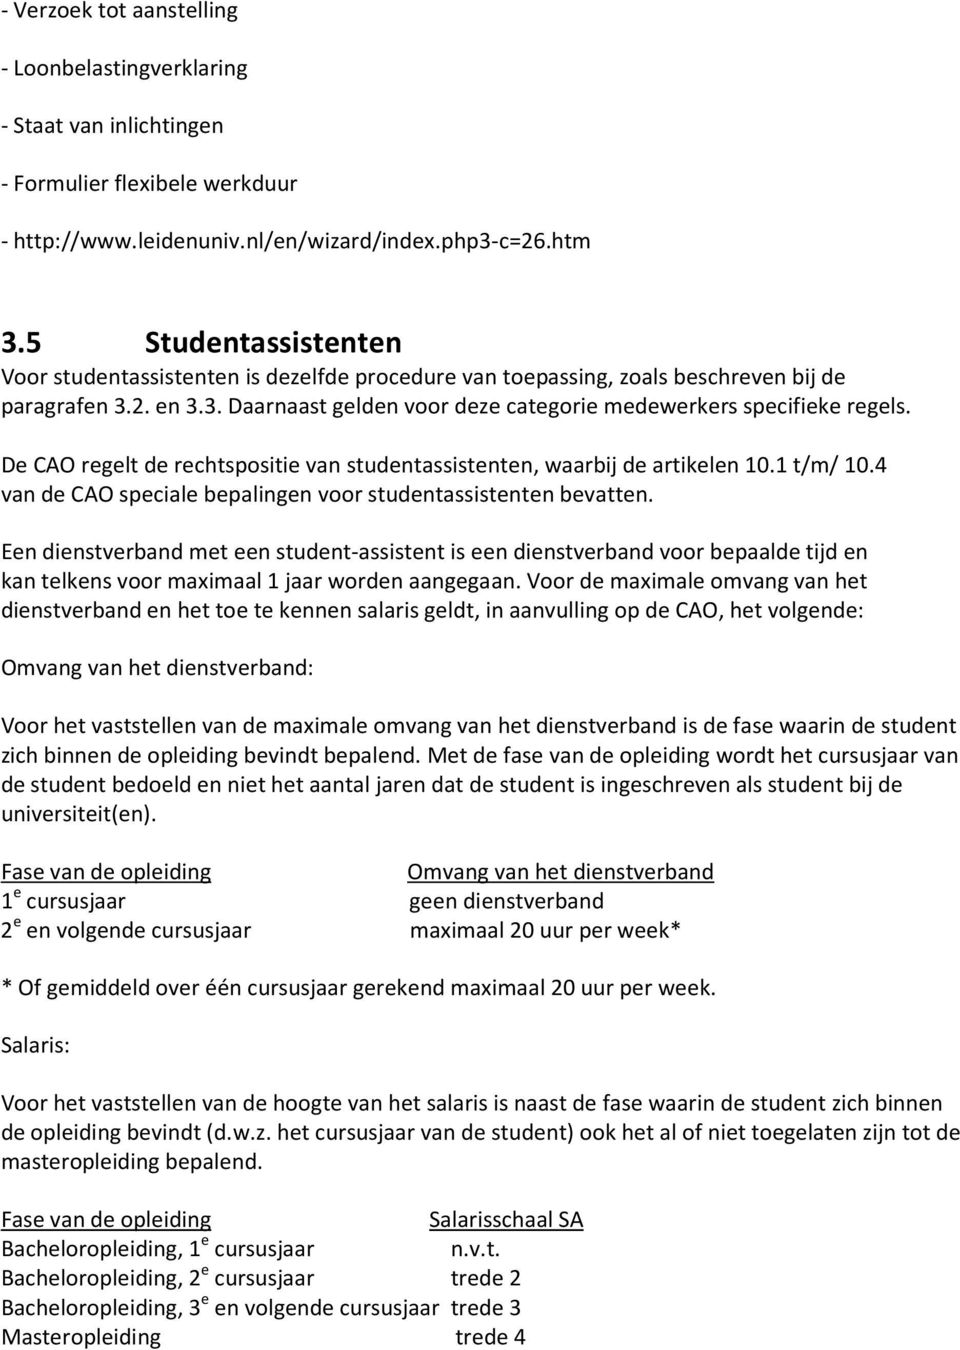 De CAO regelt de rechtspositie van studentassistenten, waarbij de artikelen 10.1 t/m/ 10.4 van de CAO speciale bepalingen voor studentassistenten bevatten.